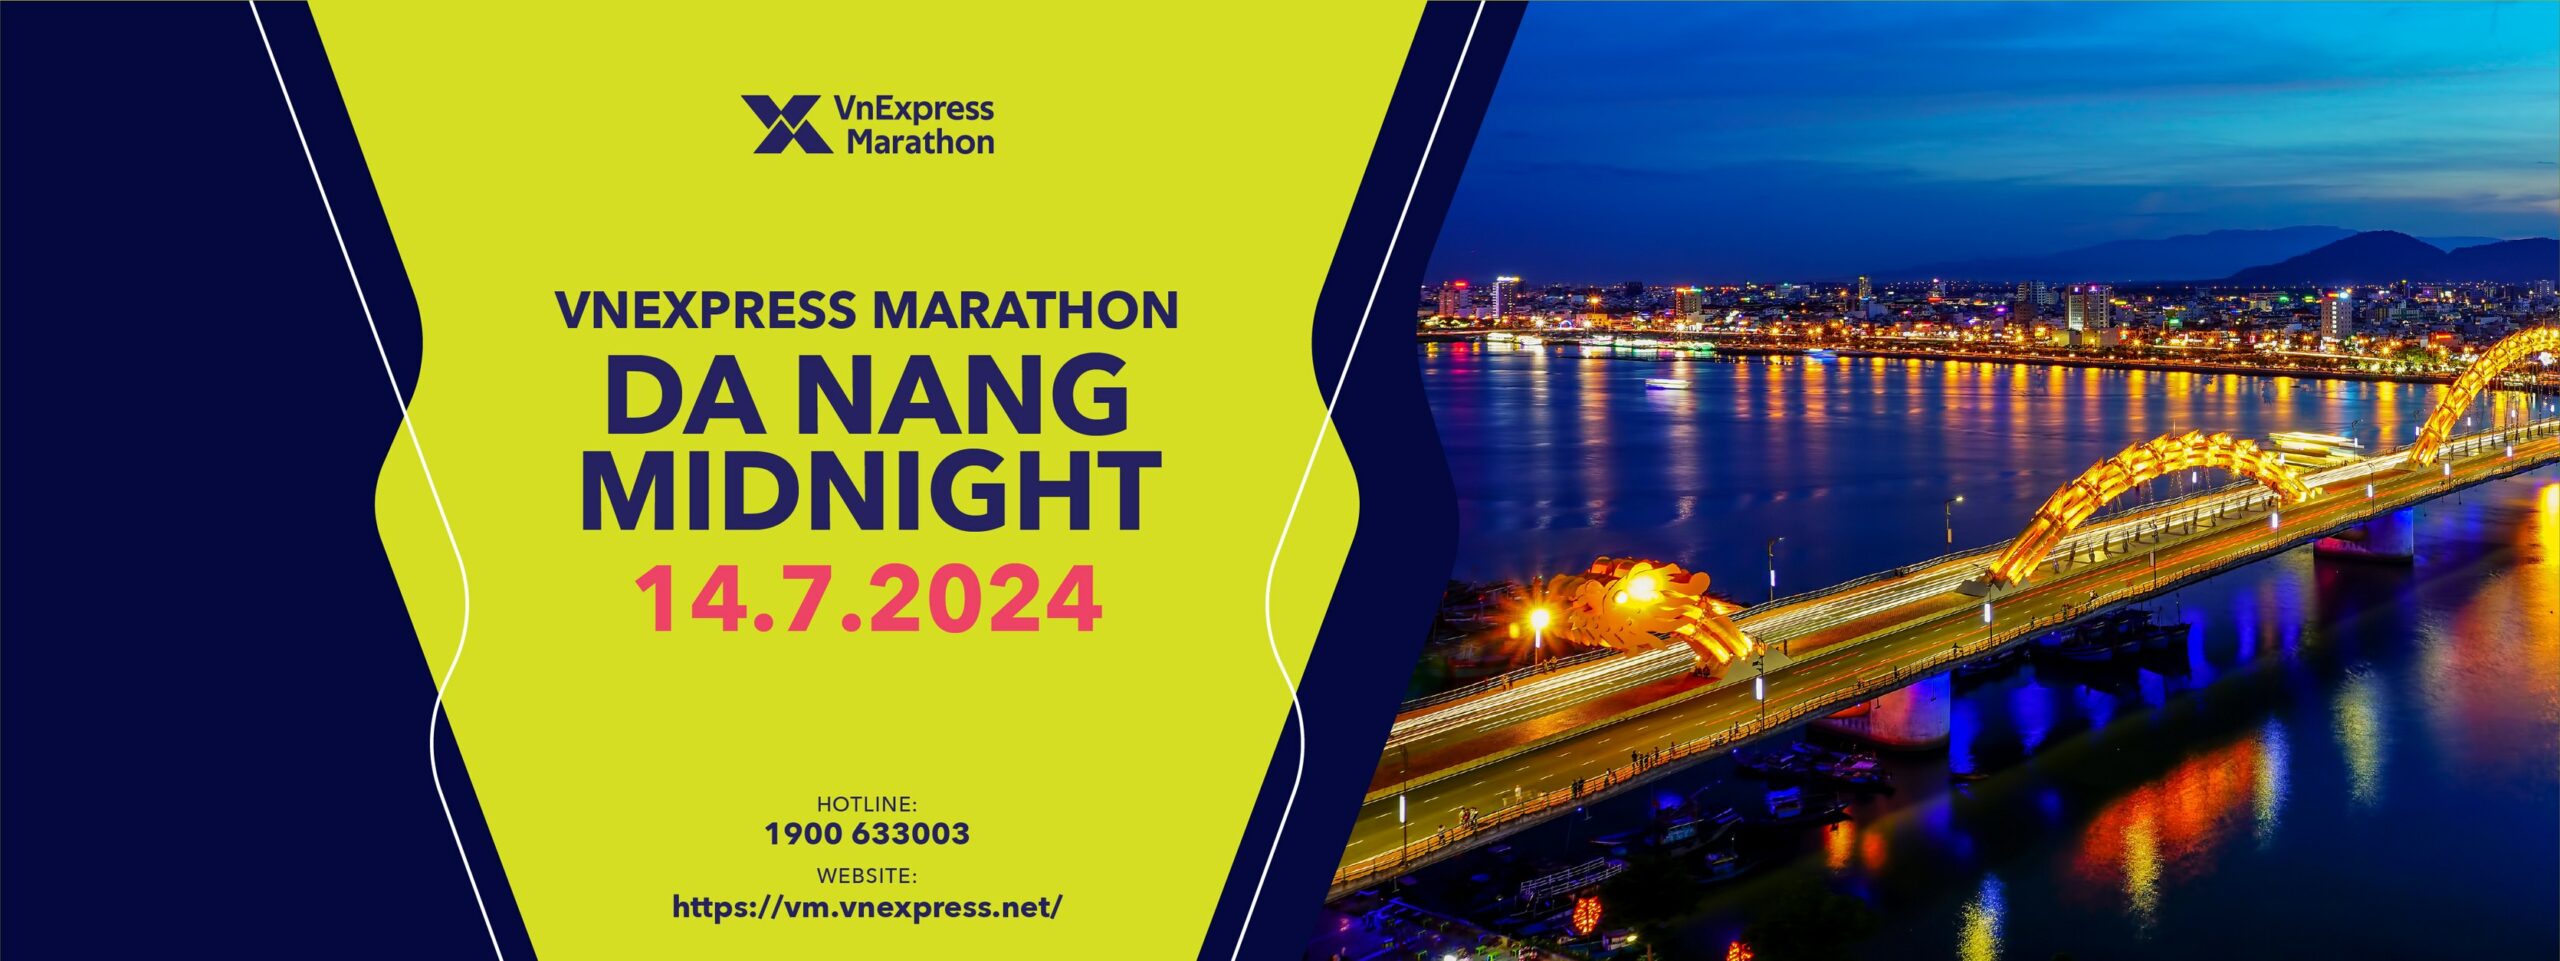 VnExpress Marathon Da Nang Midnight 2024